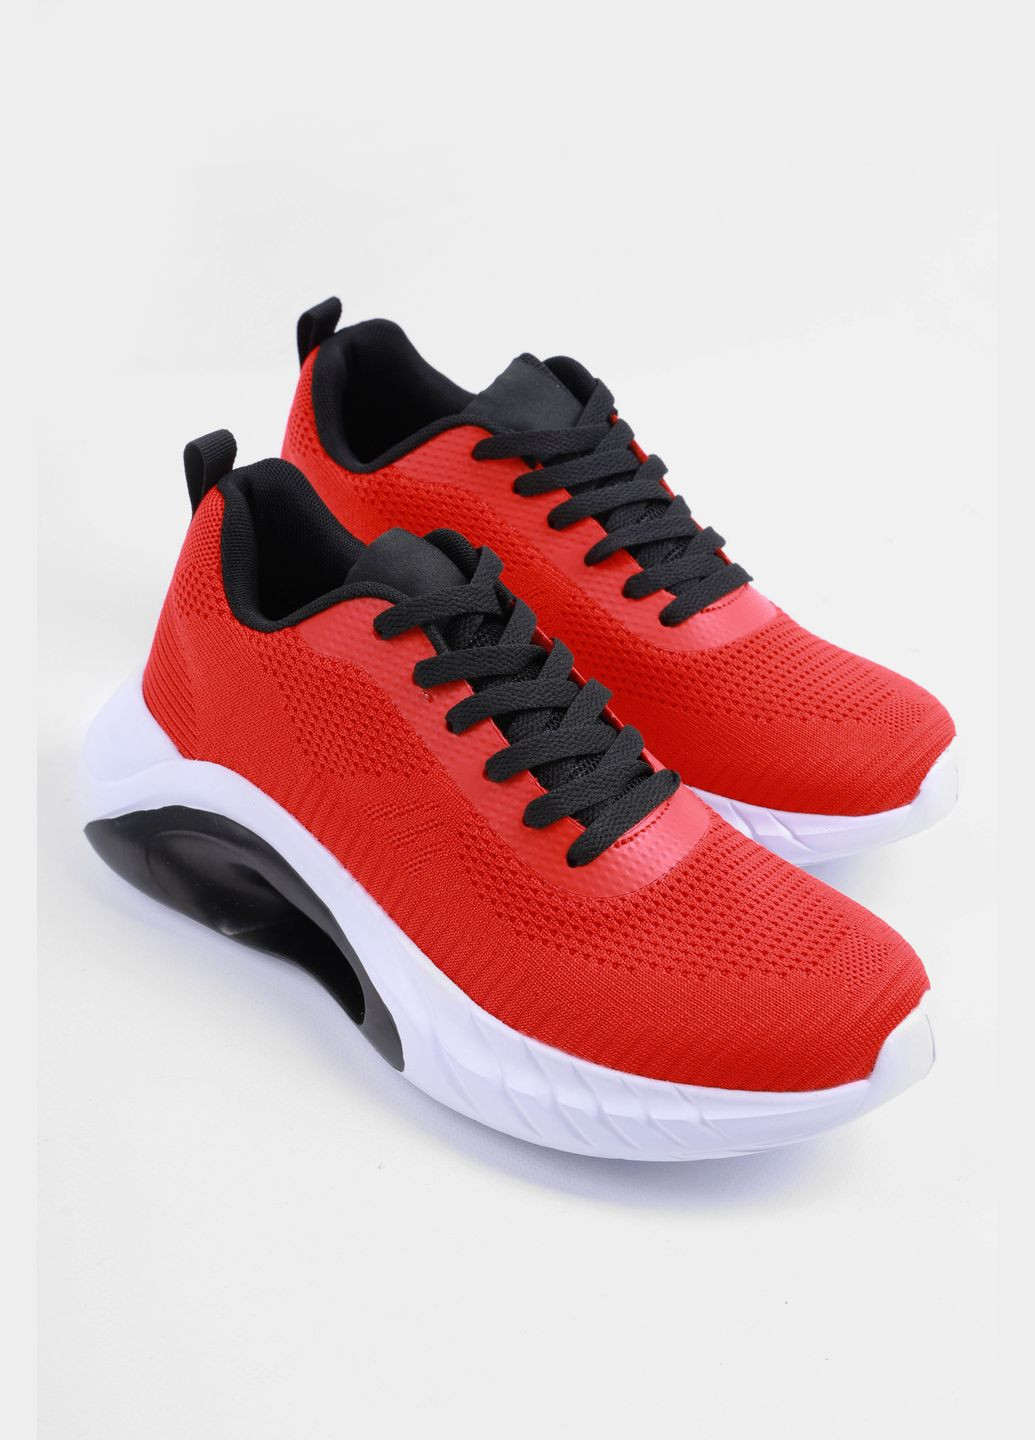 Красные демисезонные кроссовки мужские красного цвета на шнуровке Let's Shop